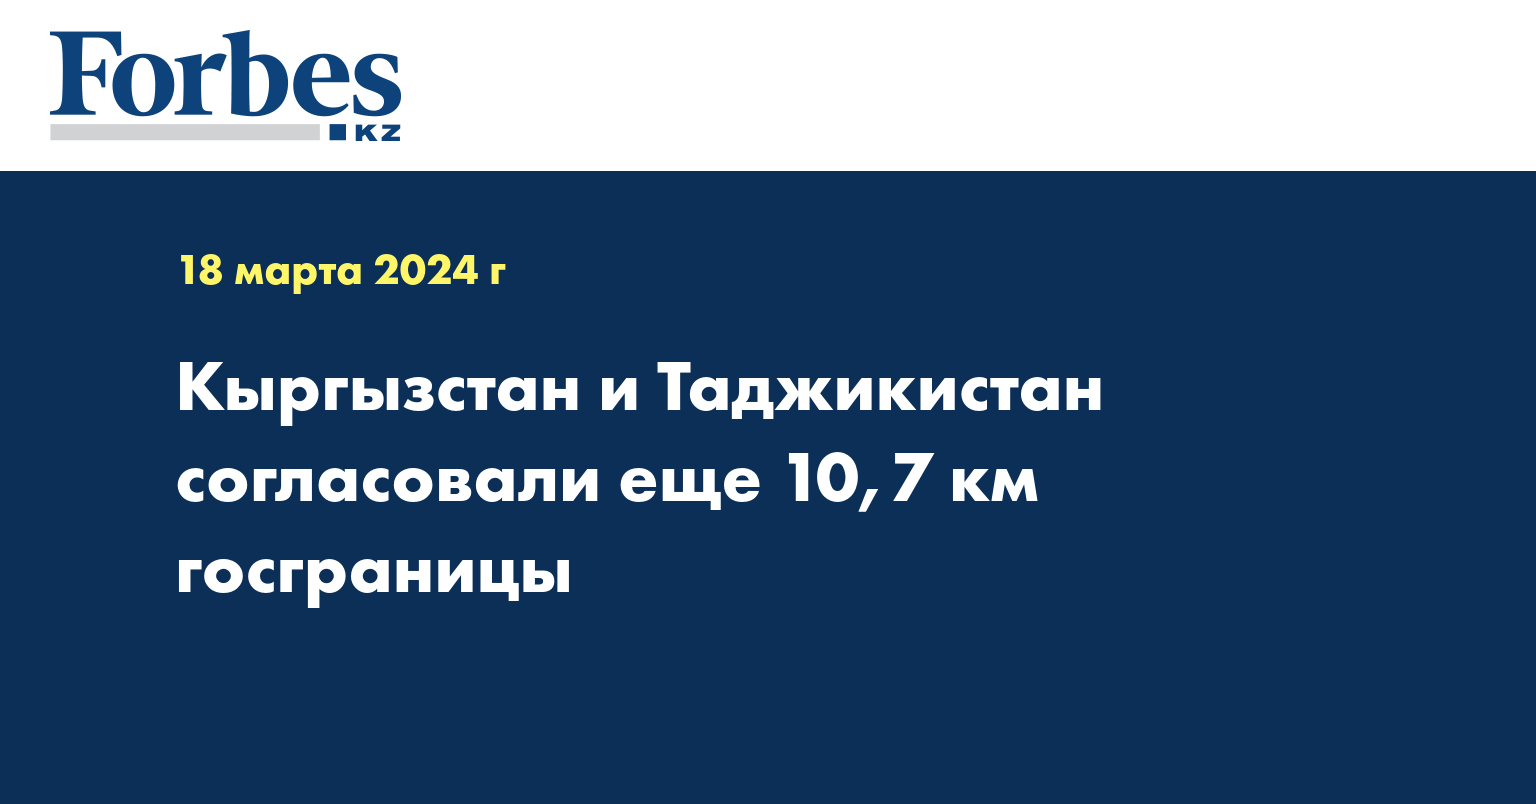 Кыргызстан и Таджикистан согласовали еще 10,7 км госграницы